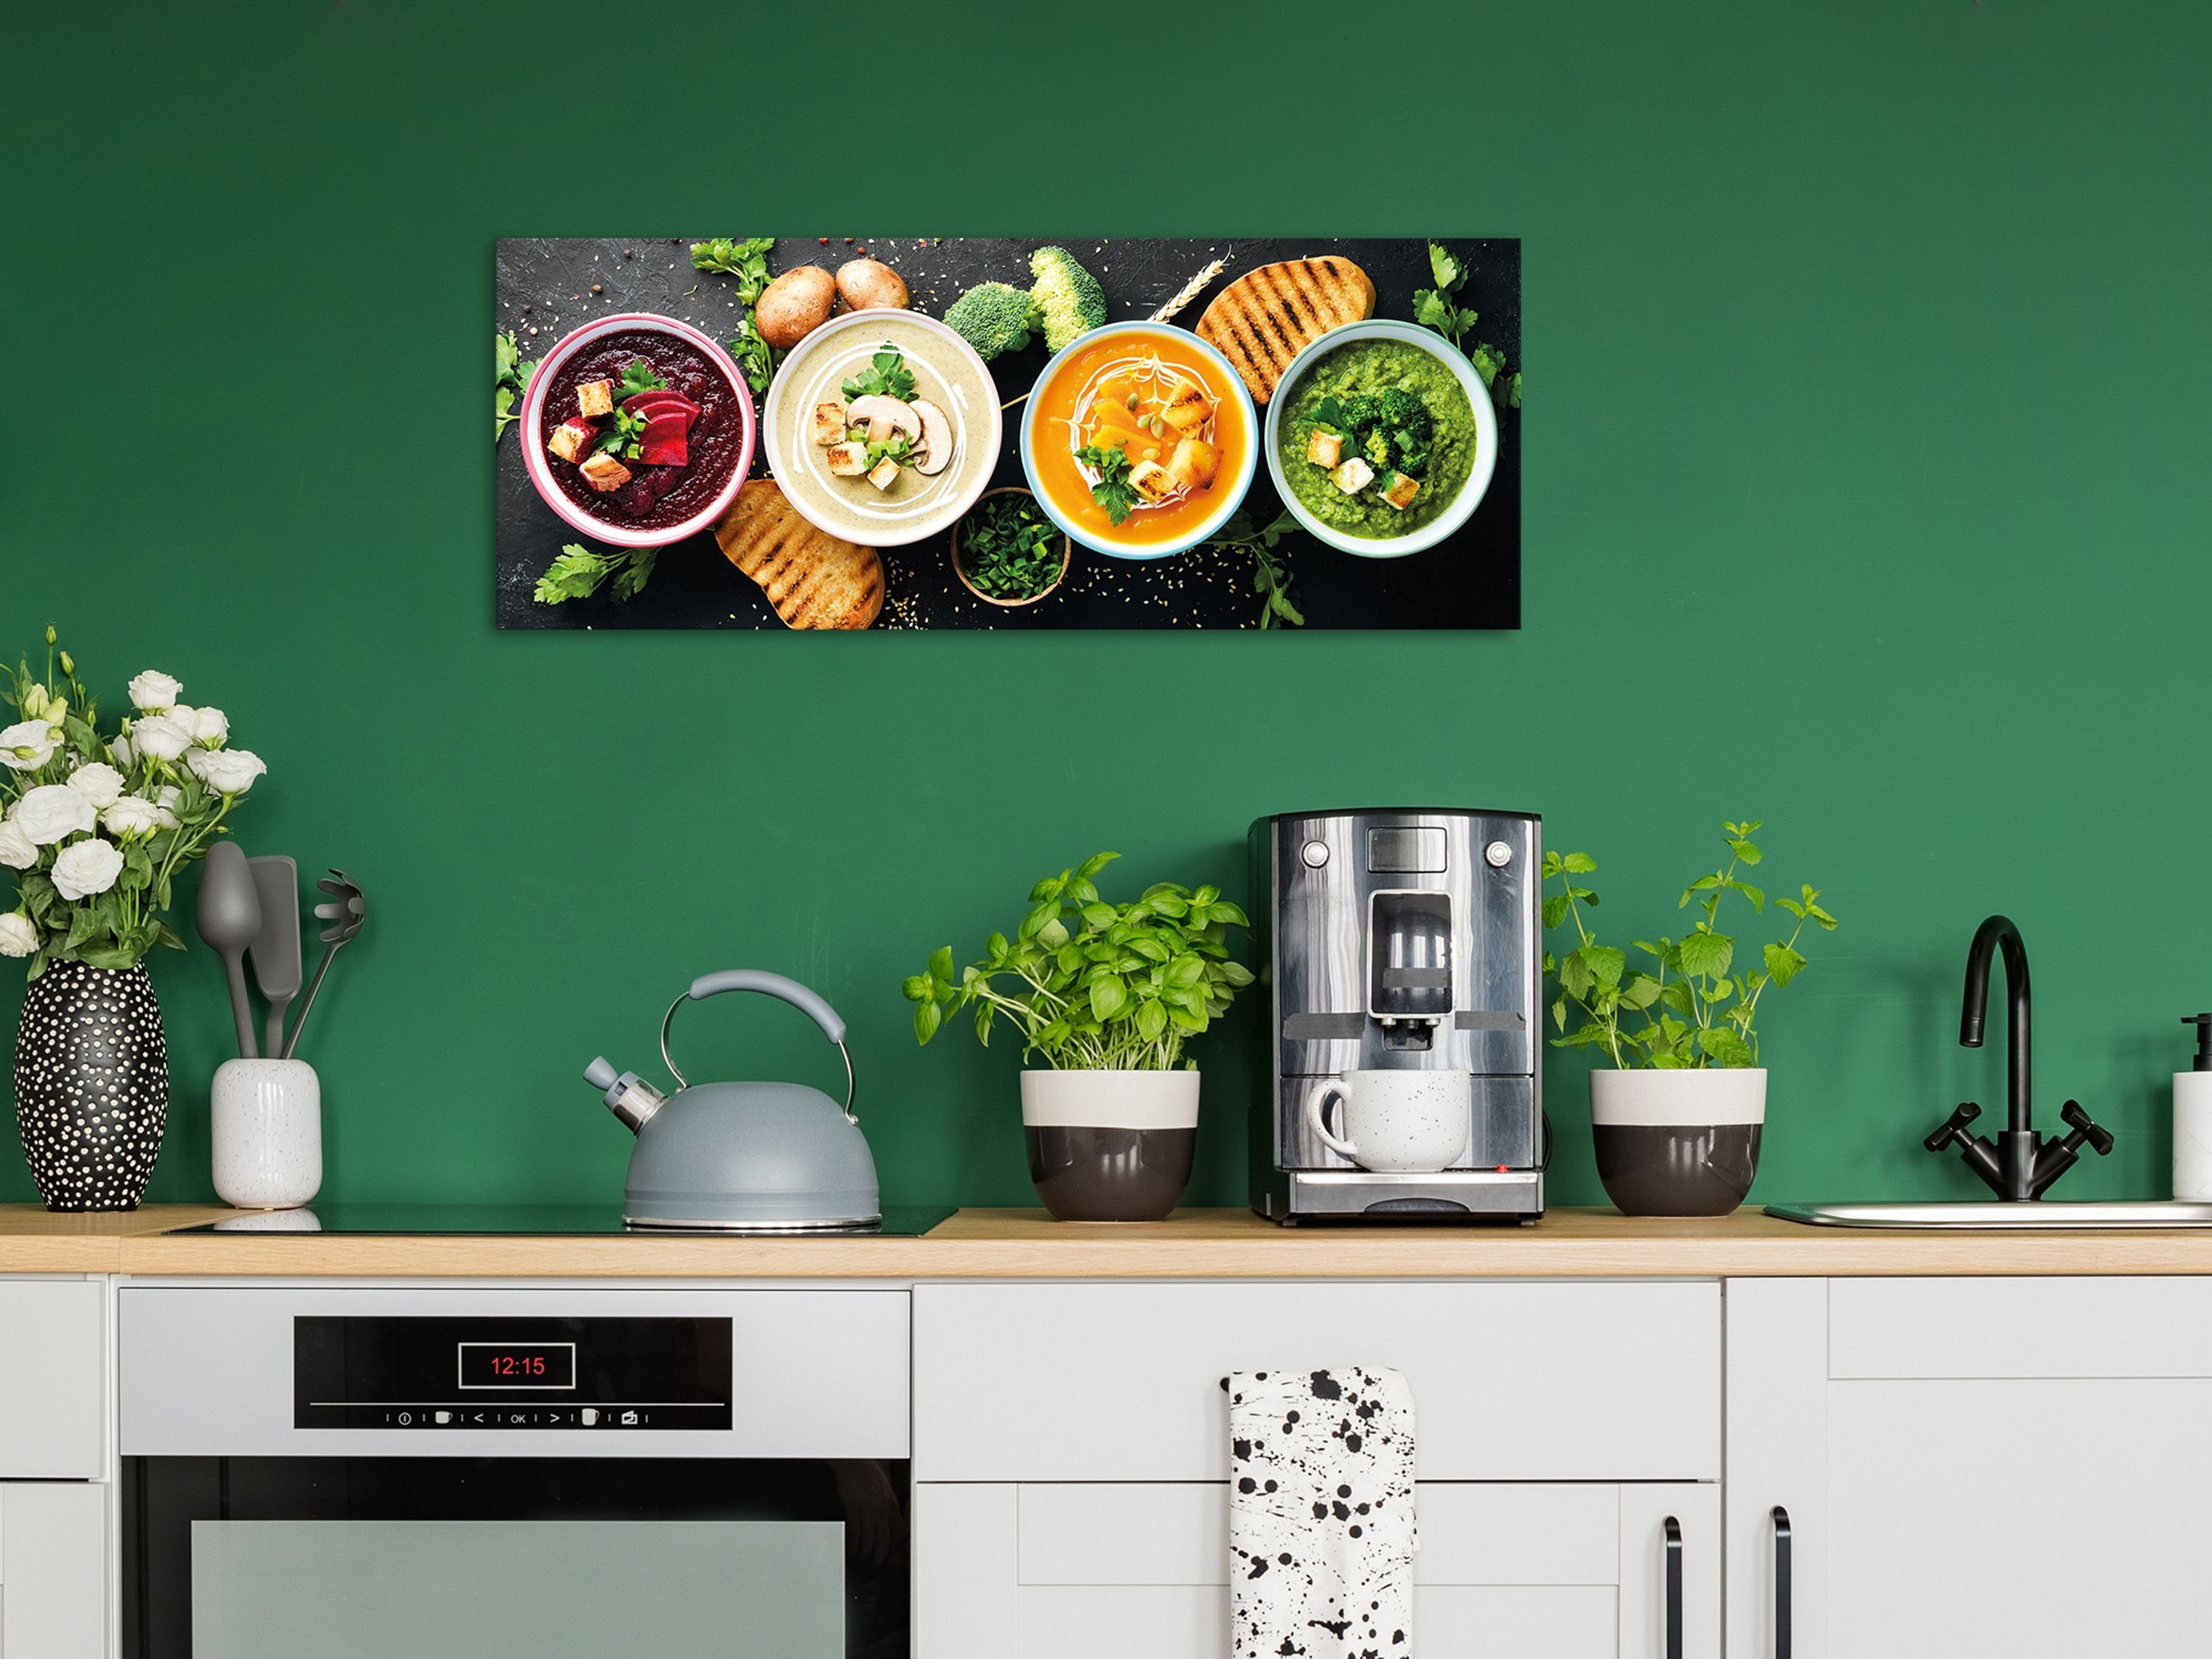 Orientalische aus artissimo Gemüse, Bild Glasbild Küchenbild bunt 80x30cm Glasbild Glas Suppen Food-Fotografie: Essen Küche